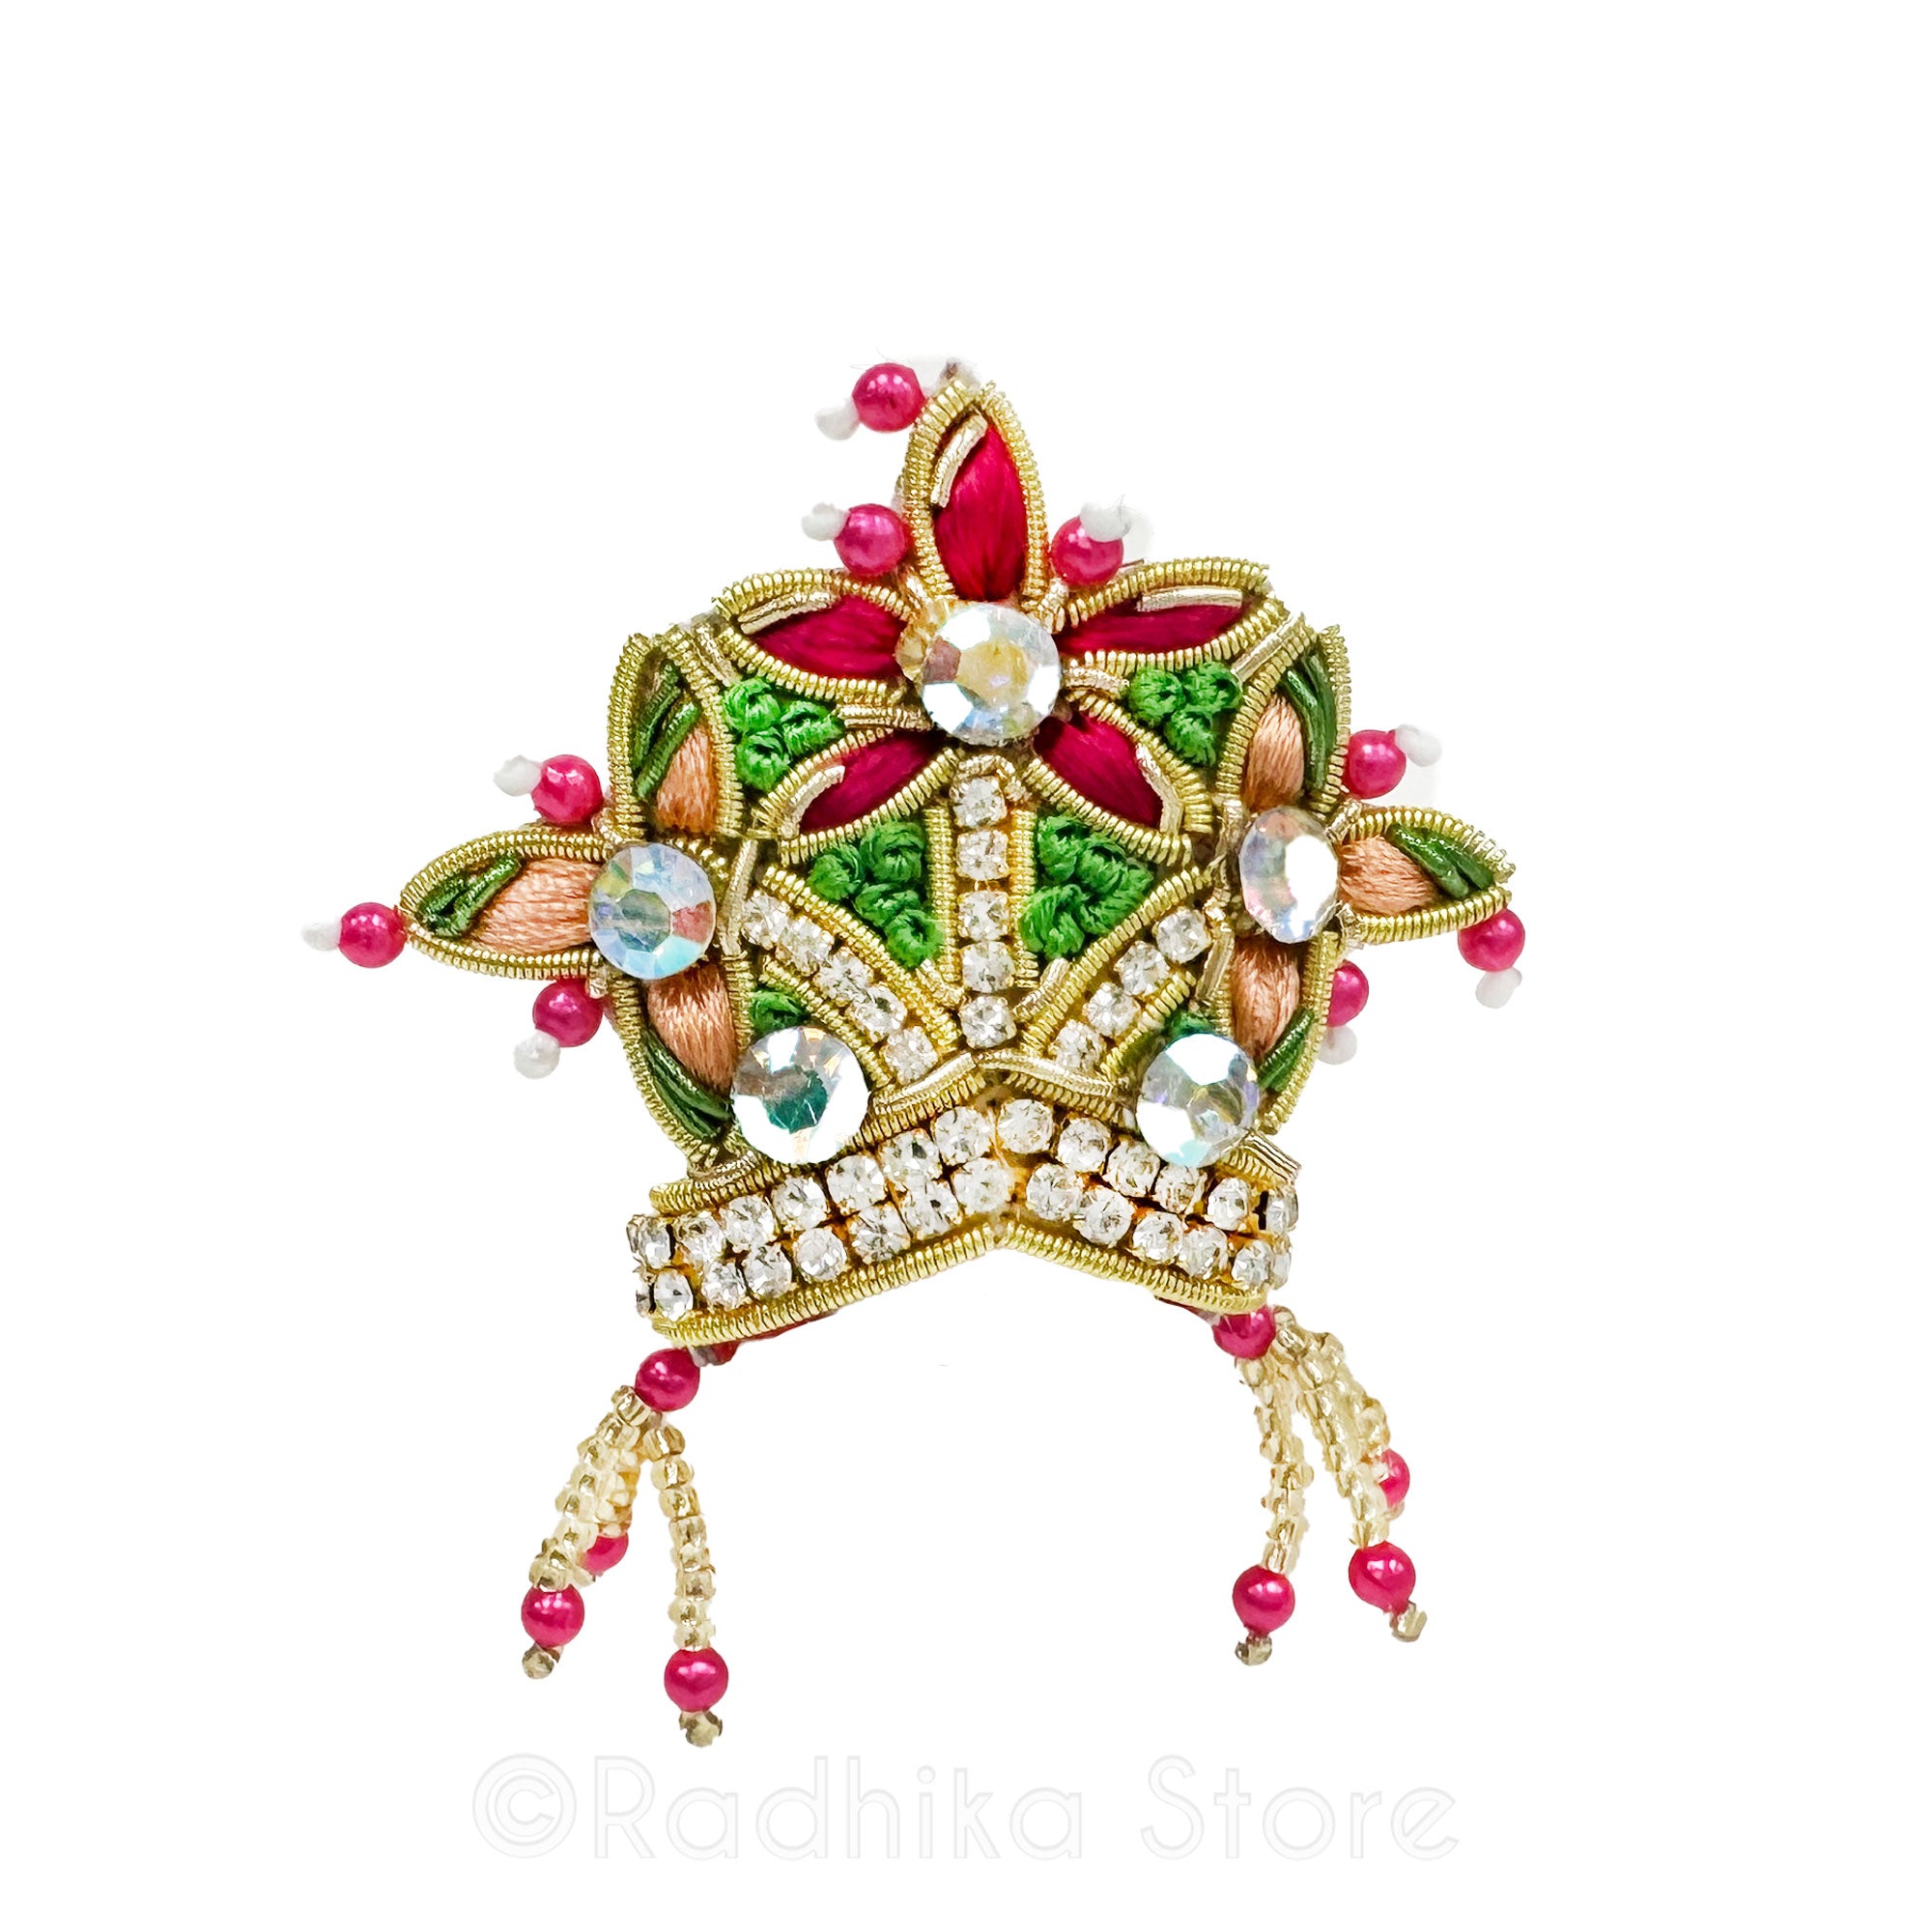 Ayodhya Flowers - Deity Crown